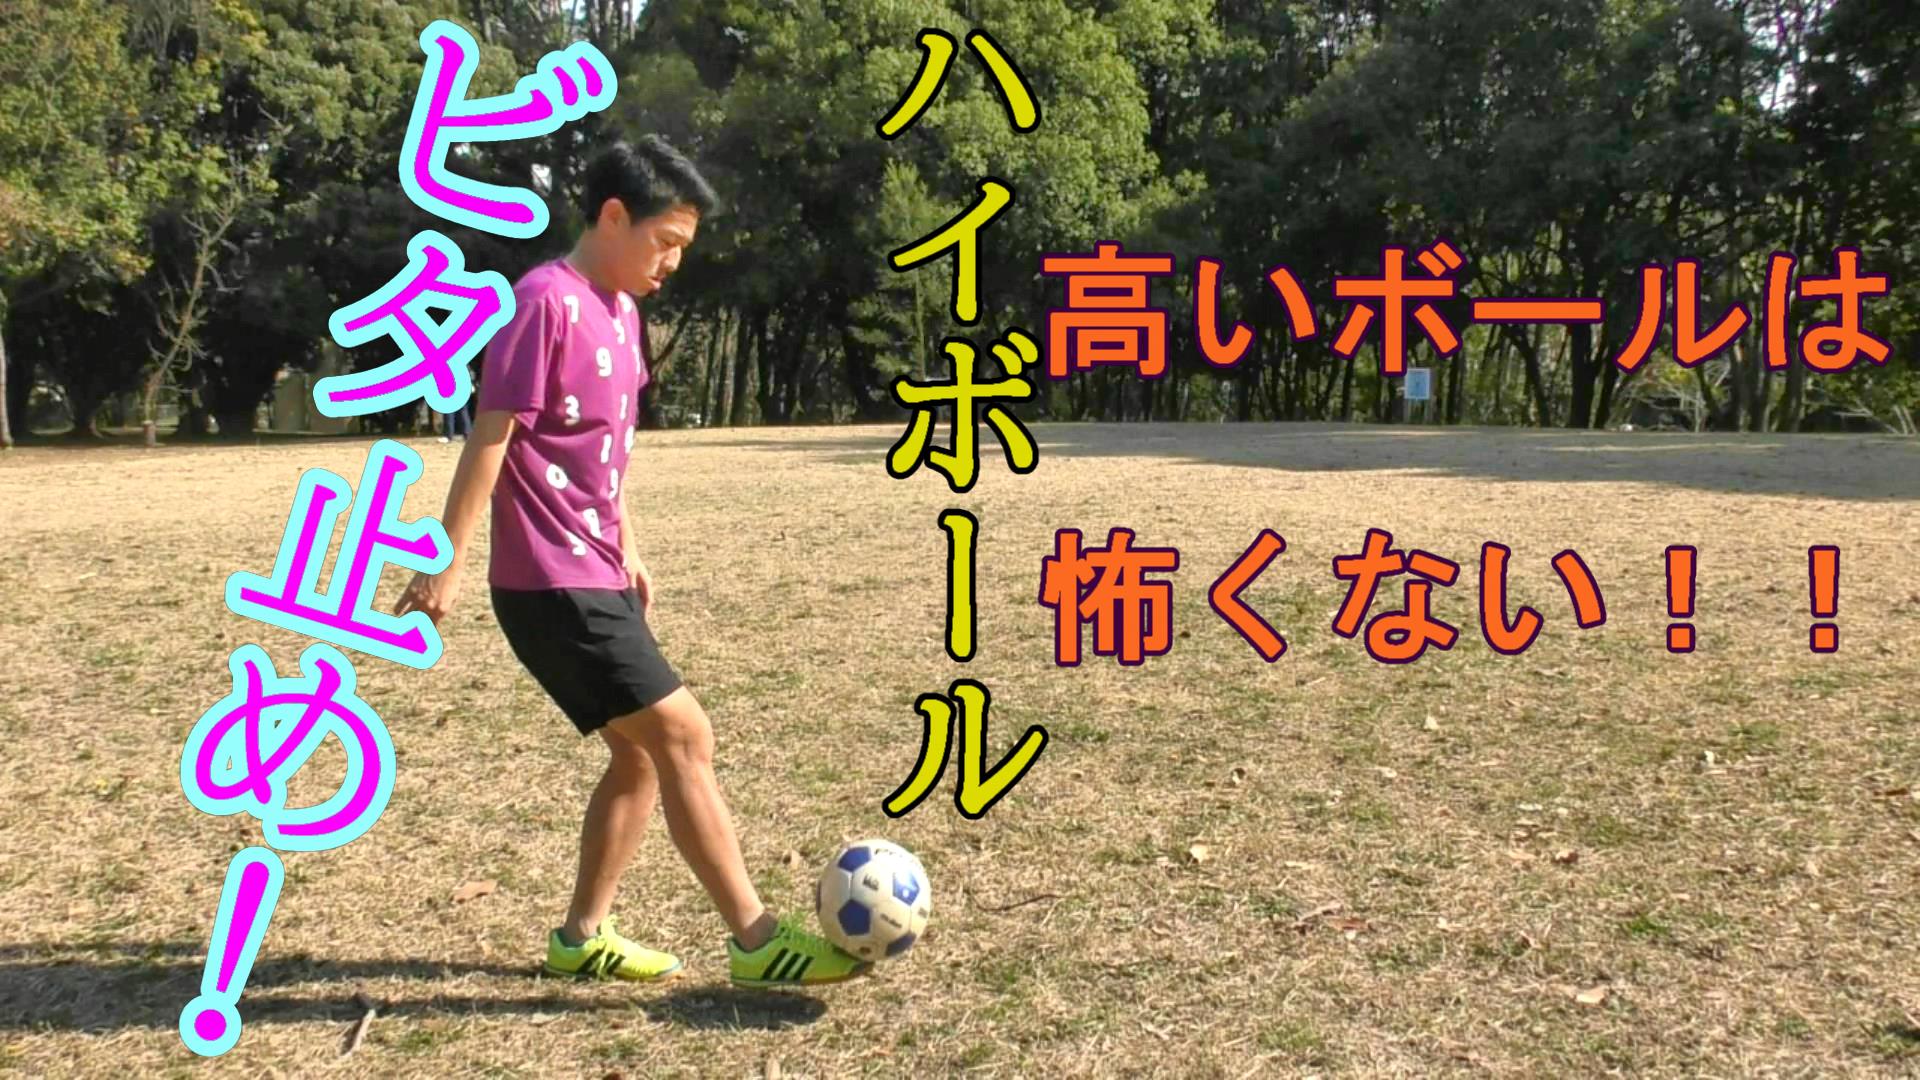 サッカーでハイボールをトラップでロナウジーニョ 乾選手のように処理するコツと練習 日本から肥満をなくす こうへい のブログ